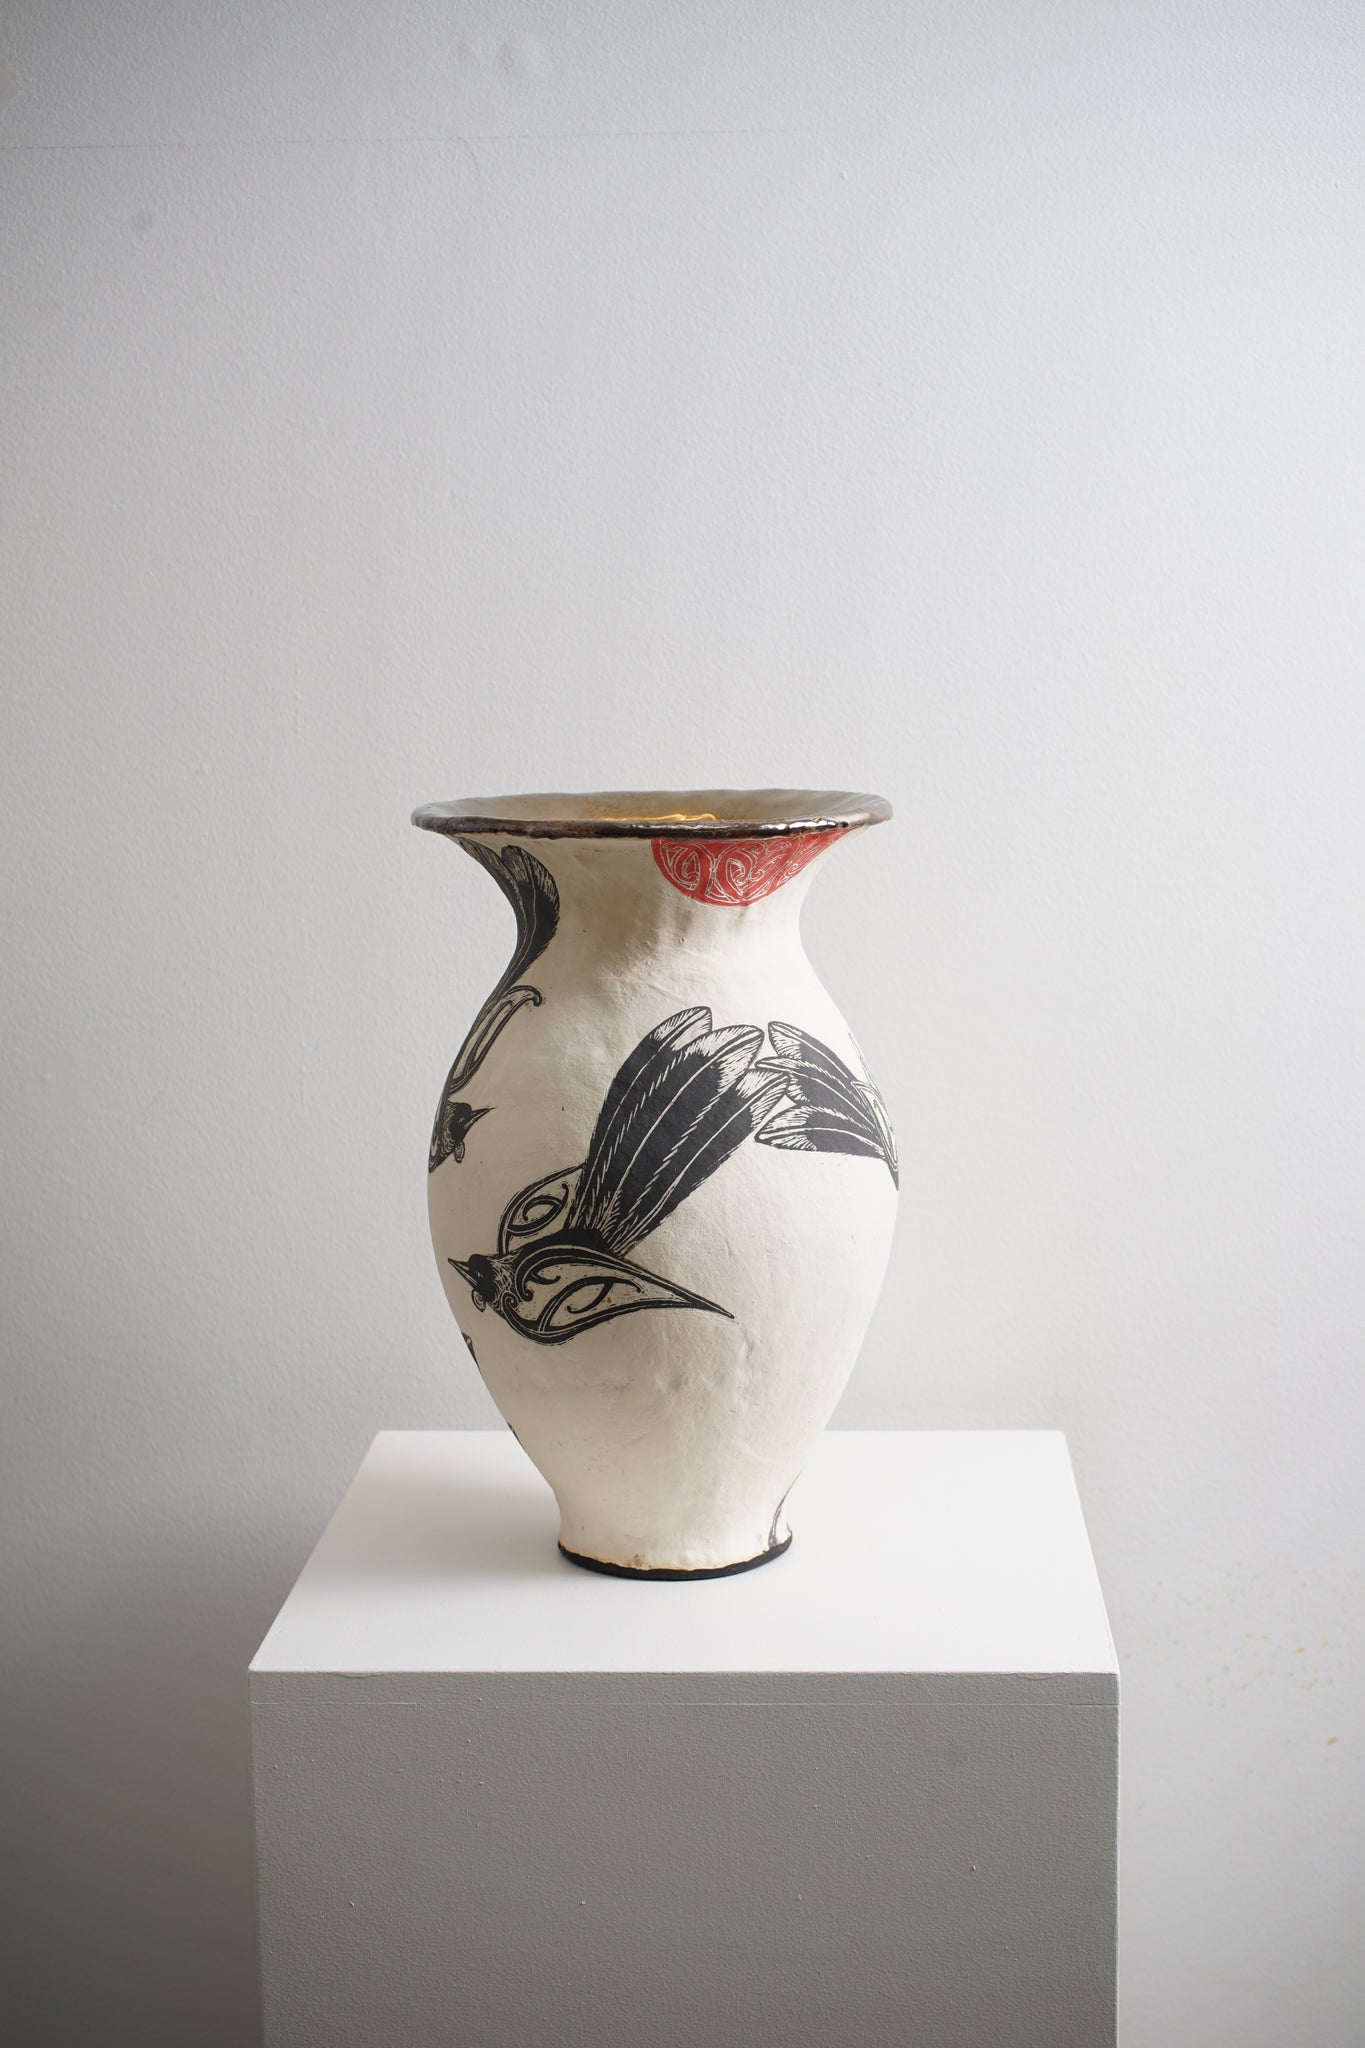 Toru Tui Vessel - Large Sgriffito Vase